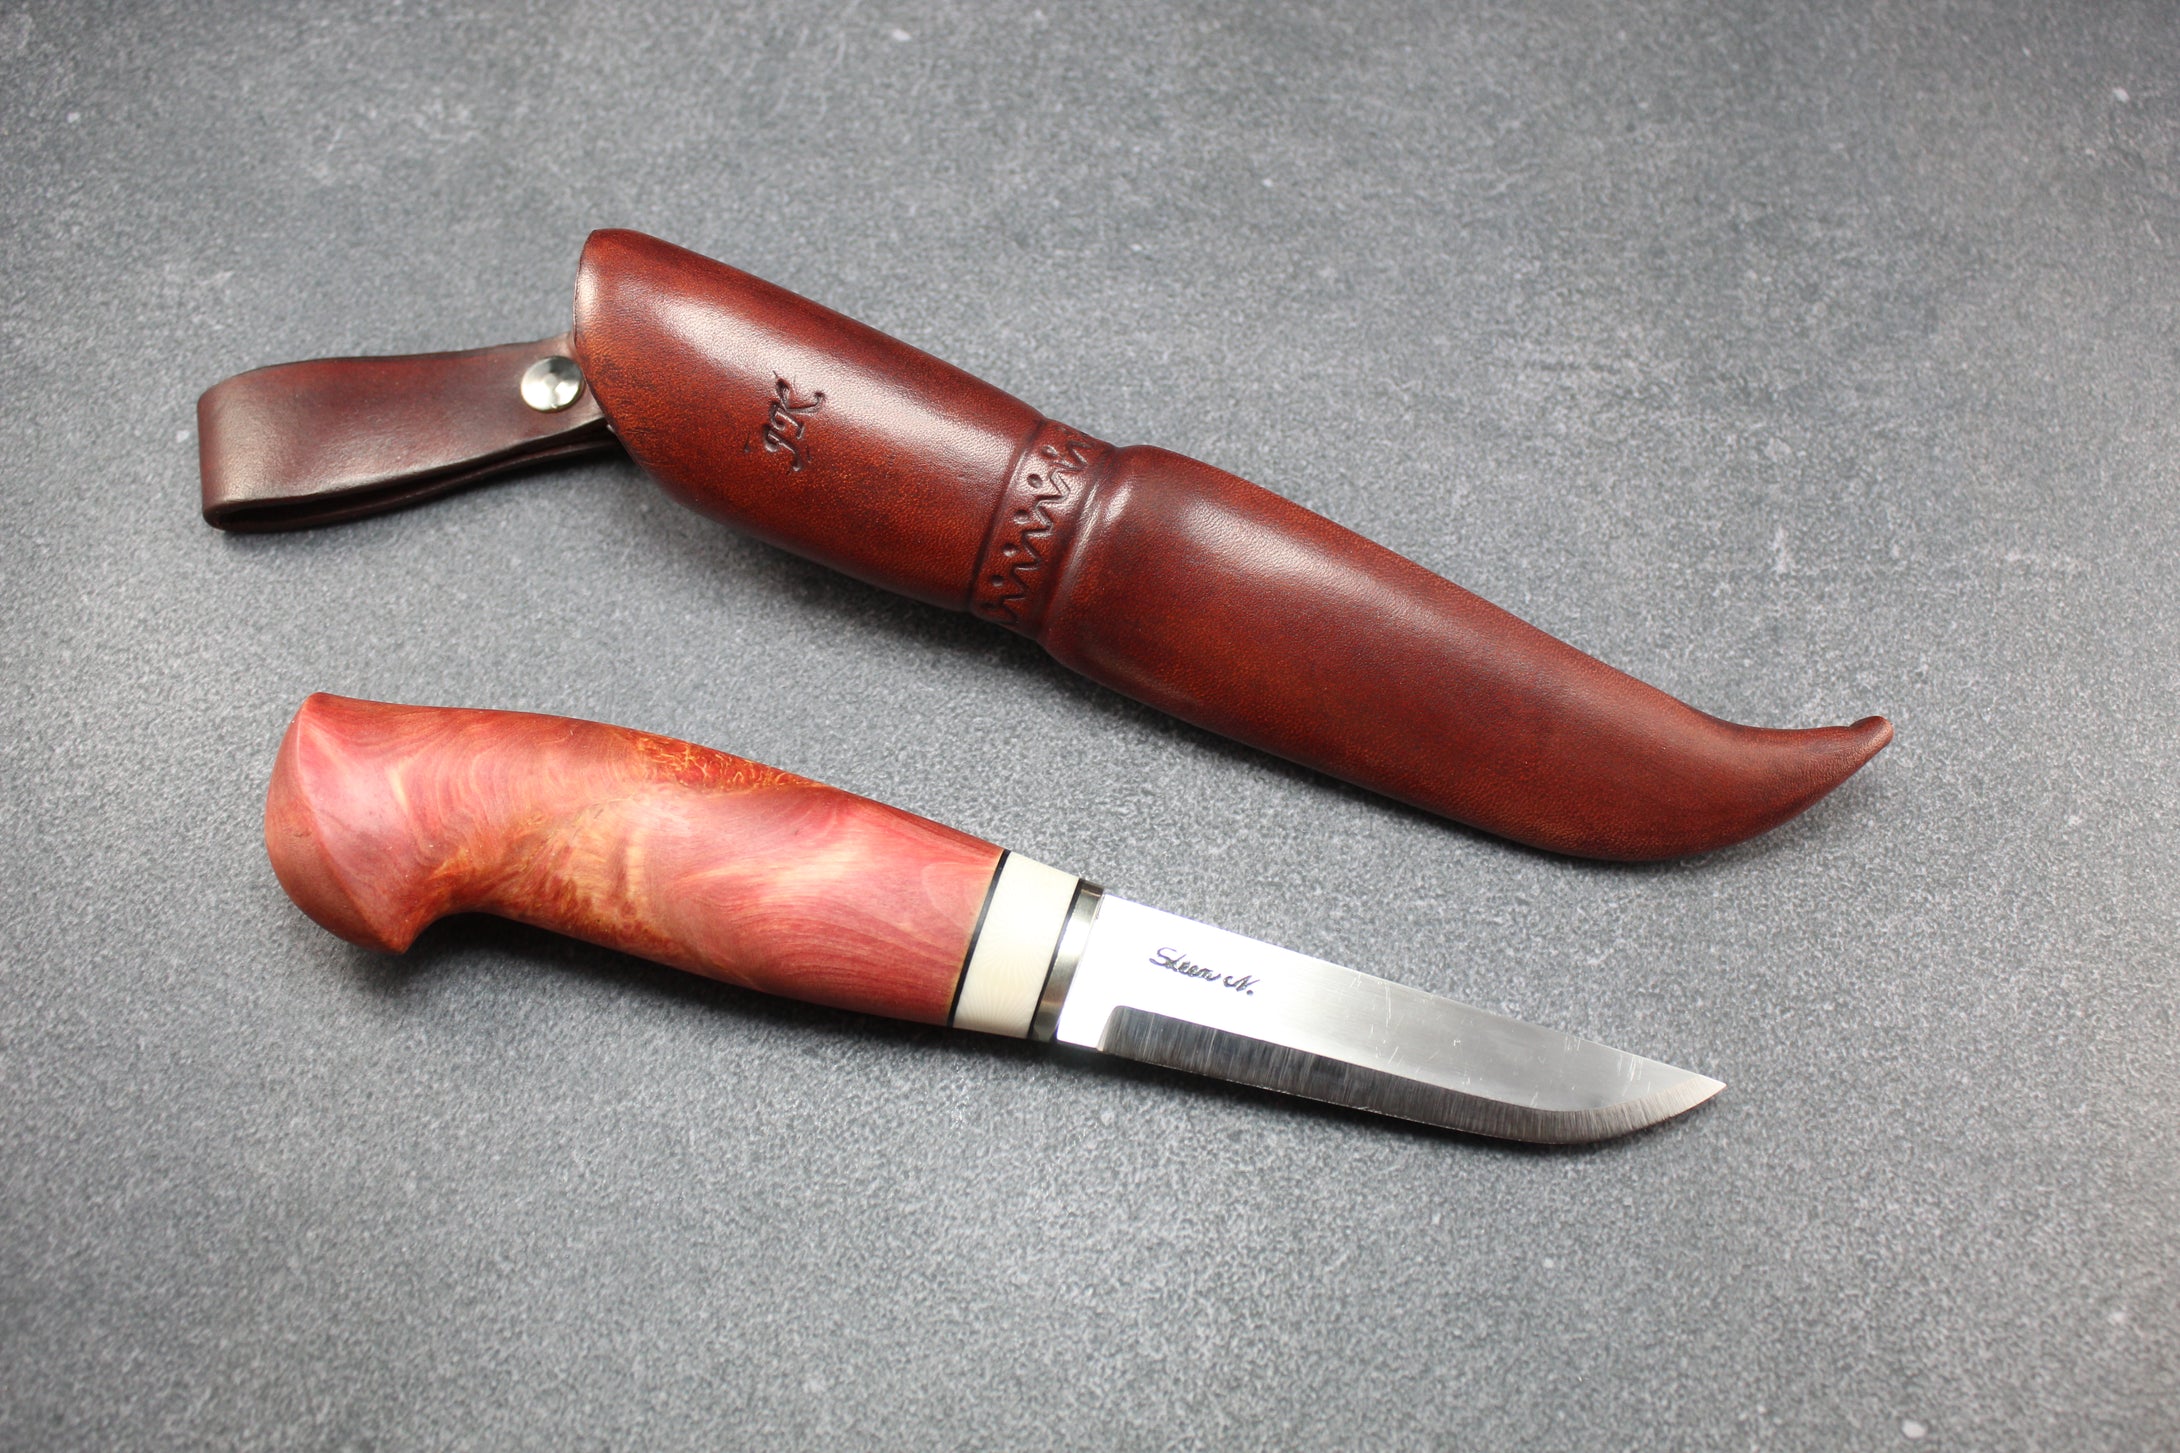 Puukko knife, Handmade J.K. – Suomalaista käsityötä